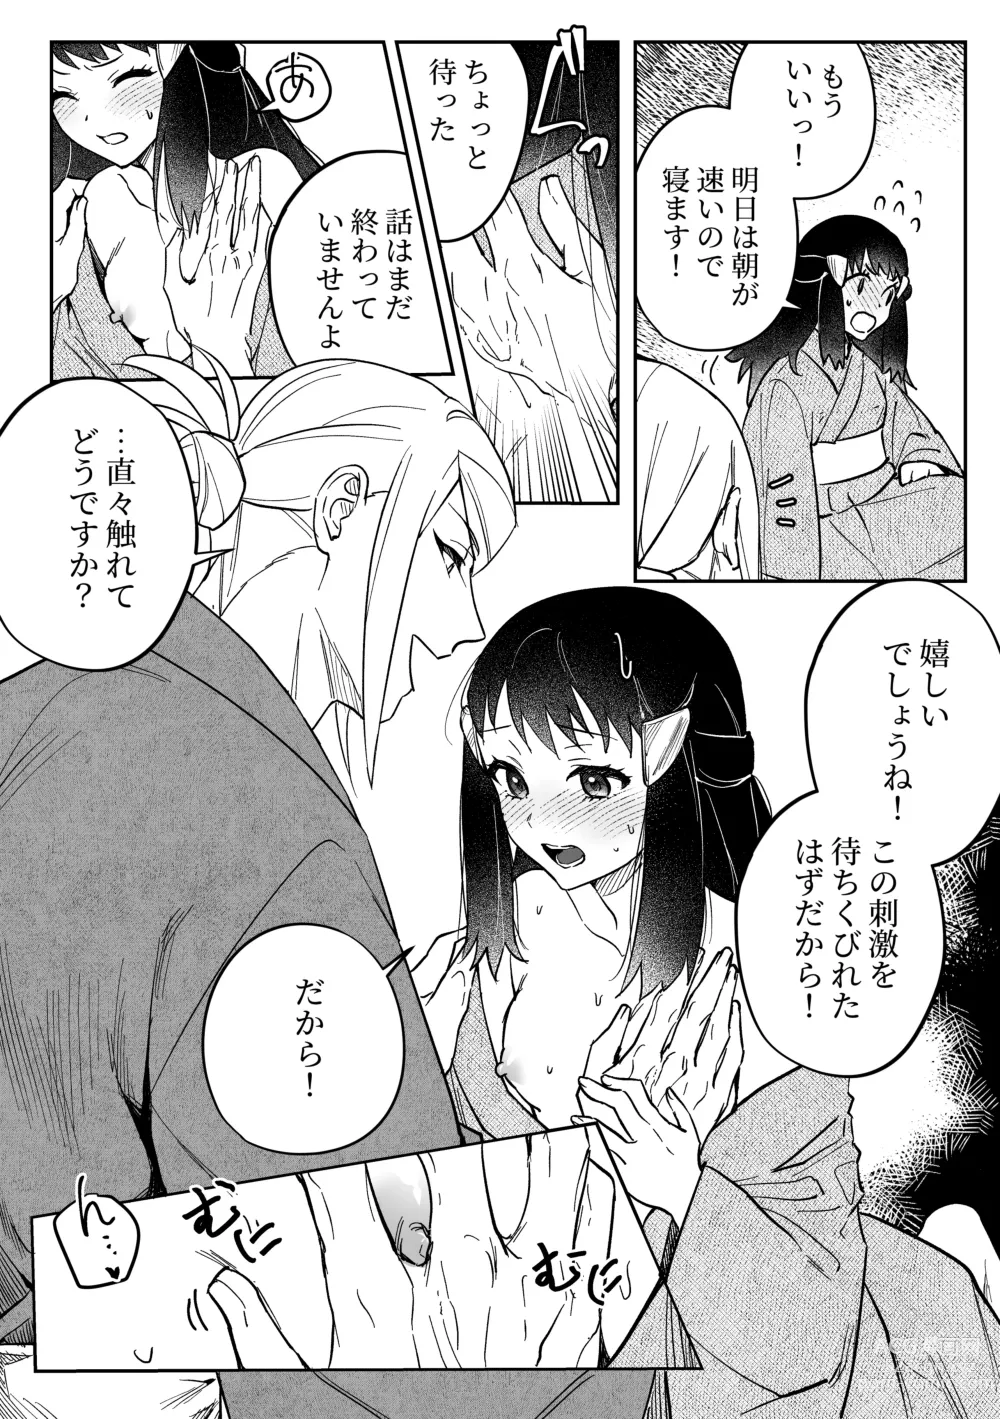 Page 4 of doujinshi Chikubi Karakau Volo Shou Manga